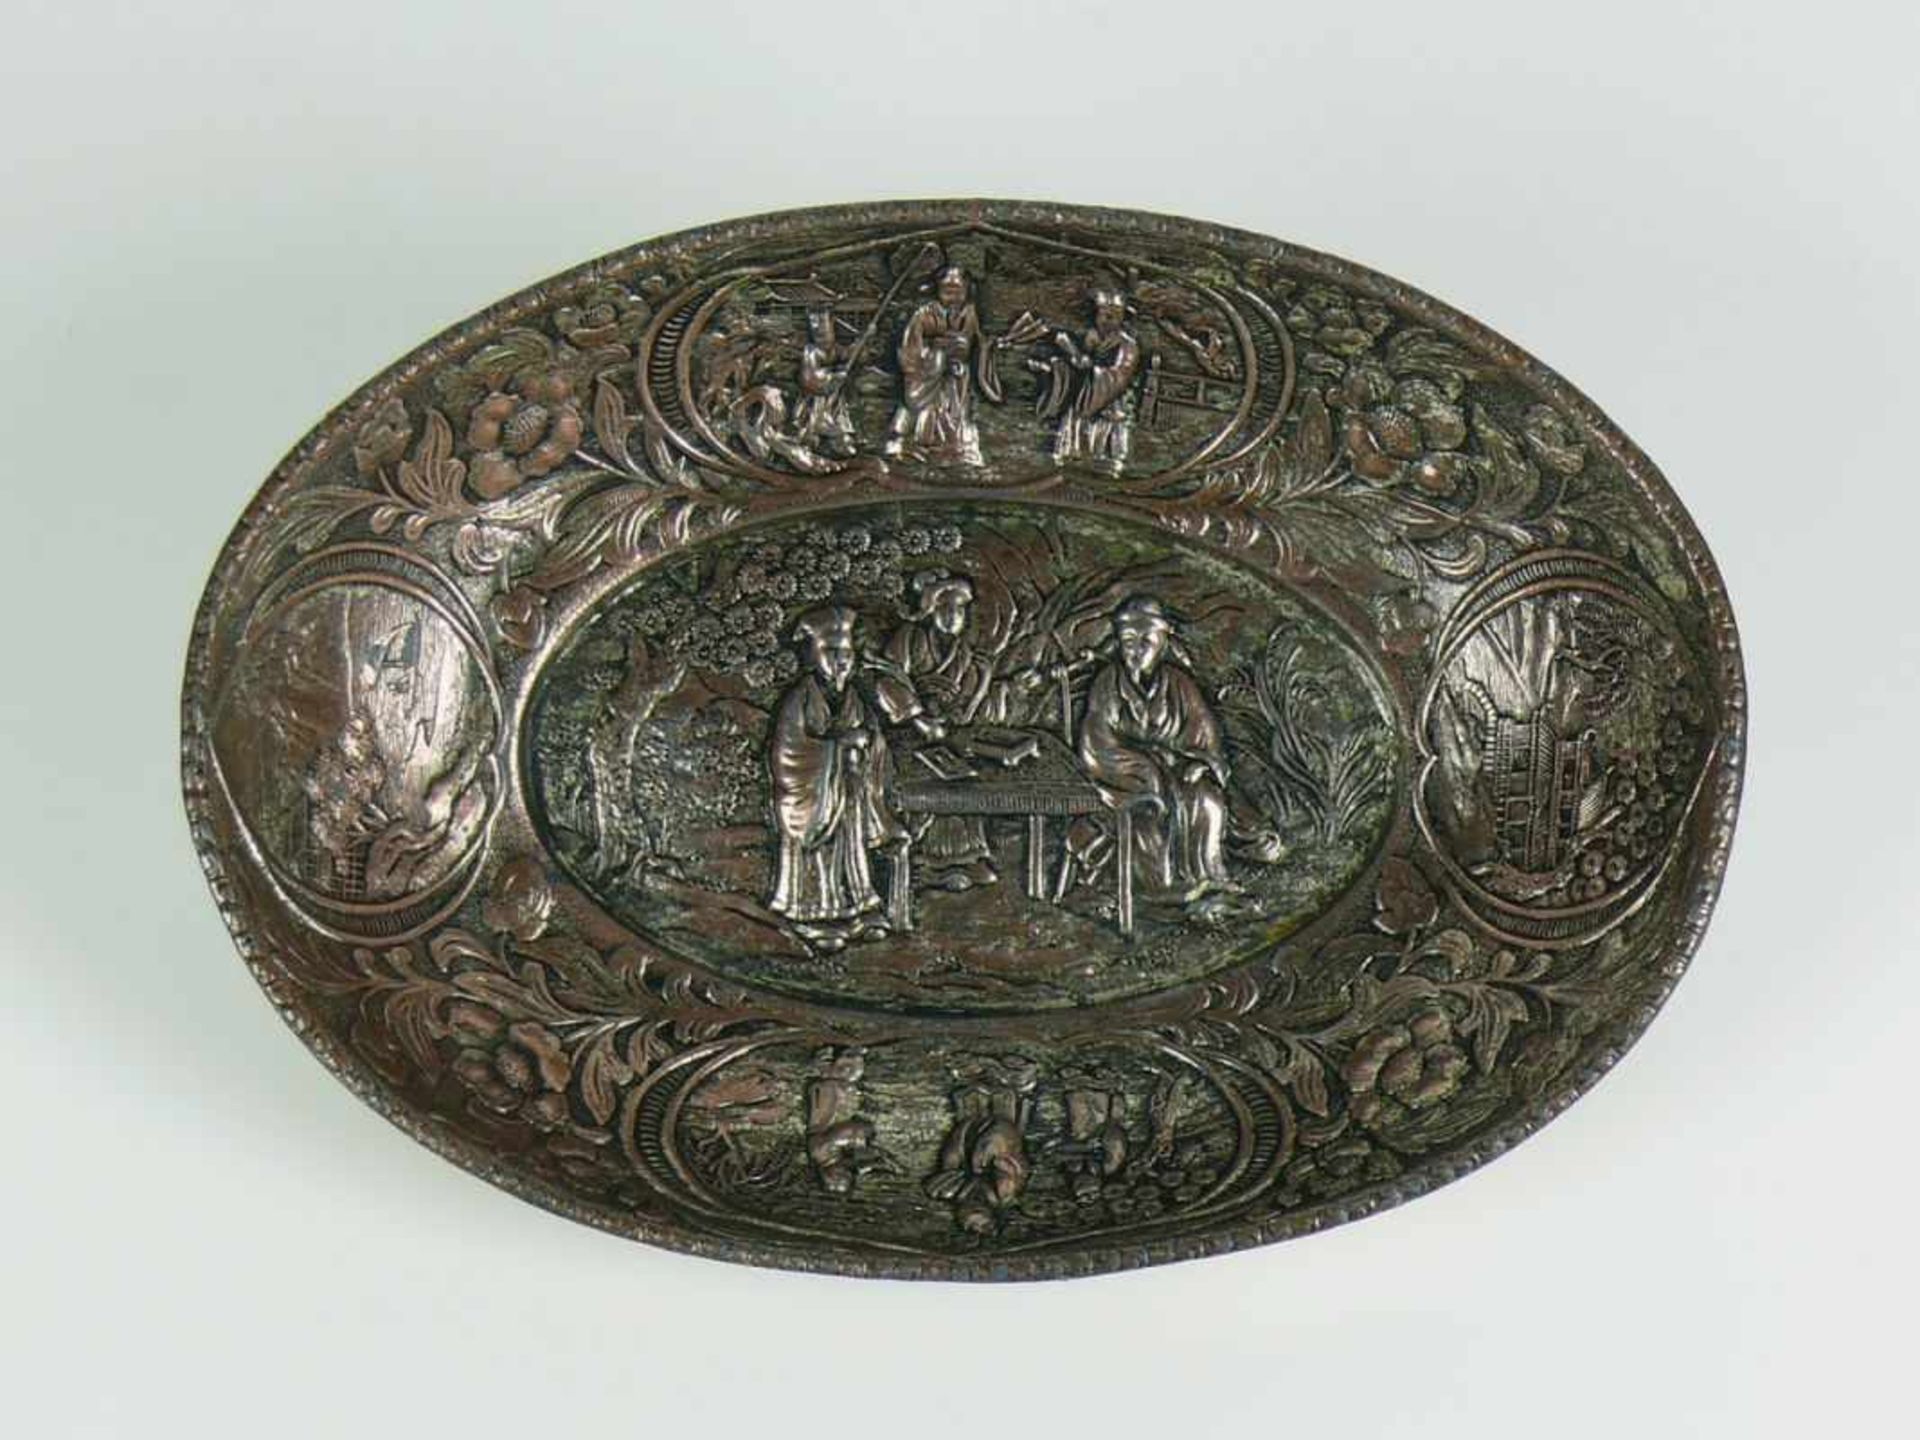 Schale (China, wohl 19. Jh.) ovale Form mit schräg hochgezogener Wandung; im Spiegel relieffierter